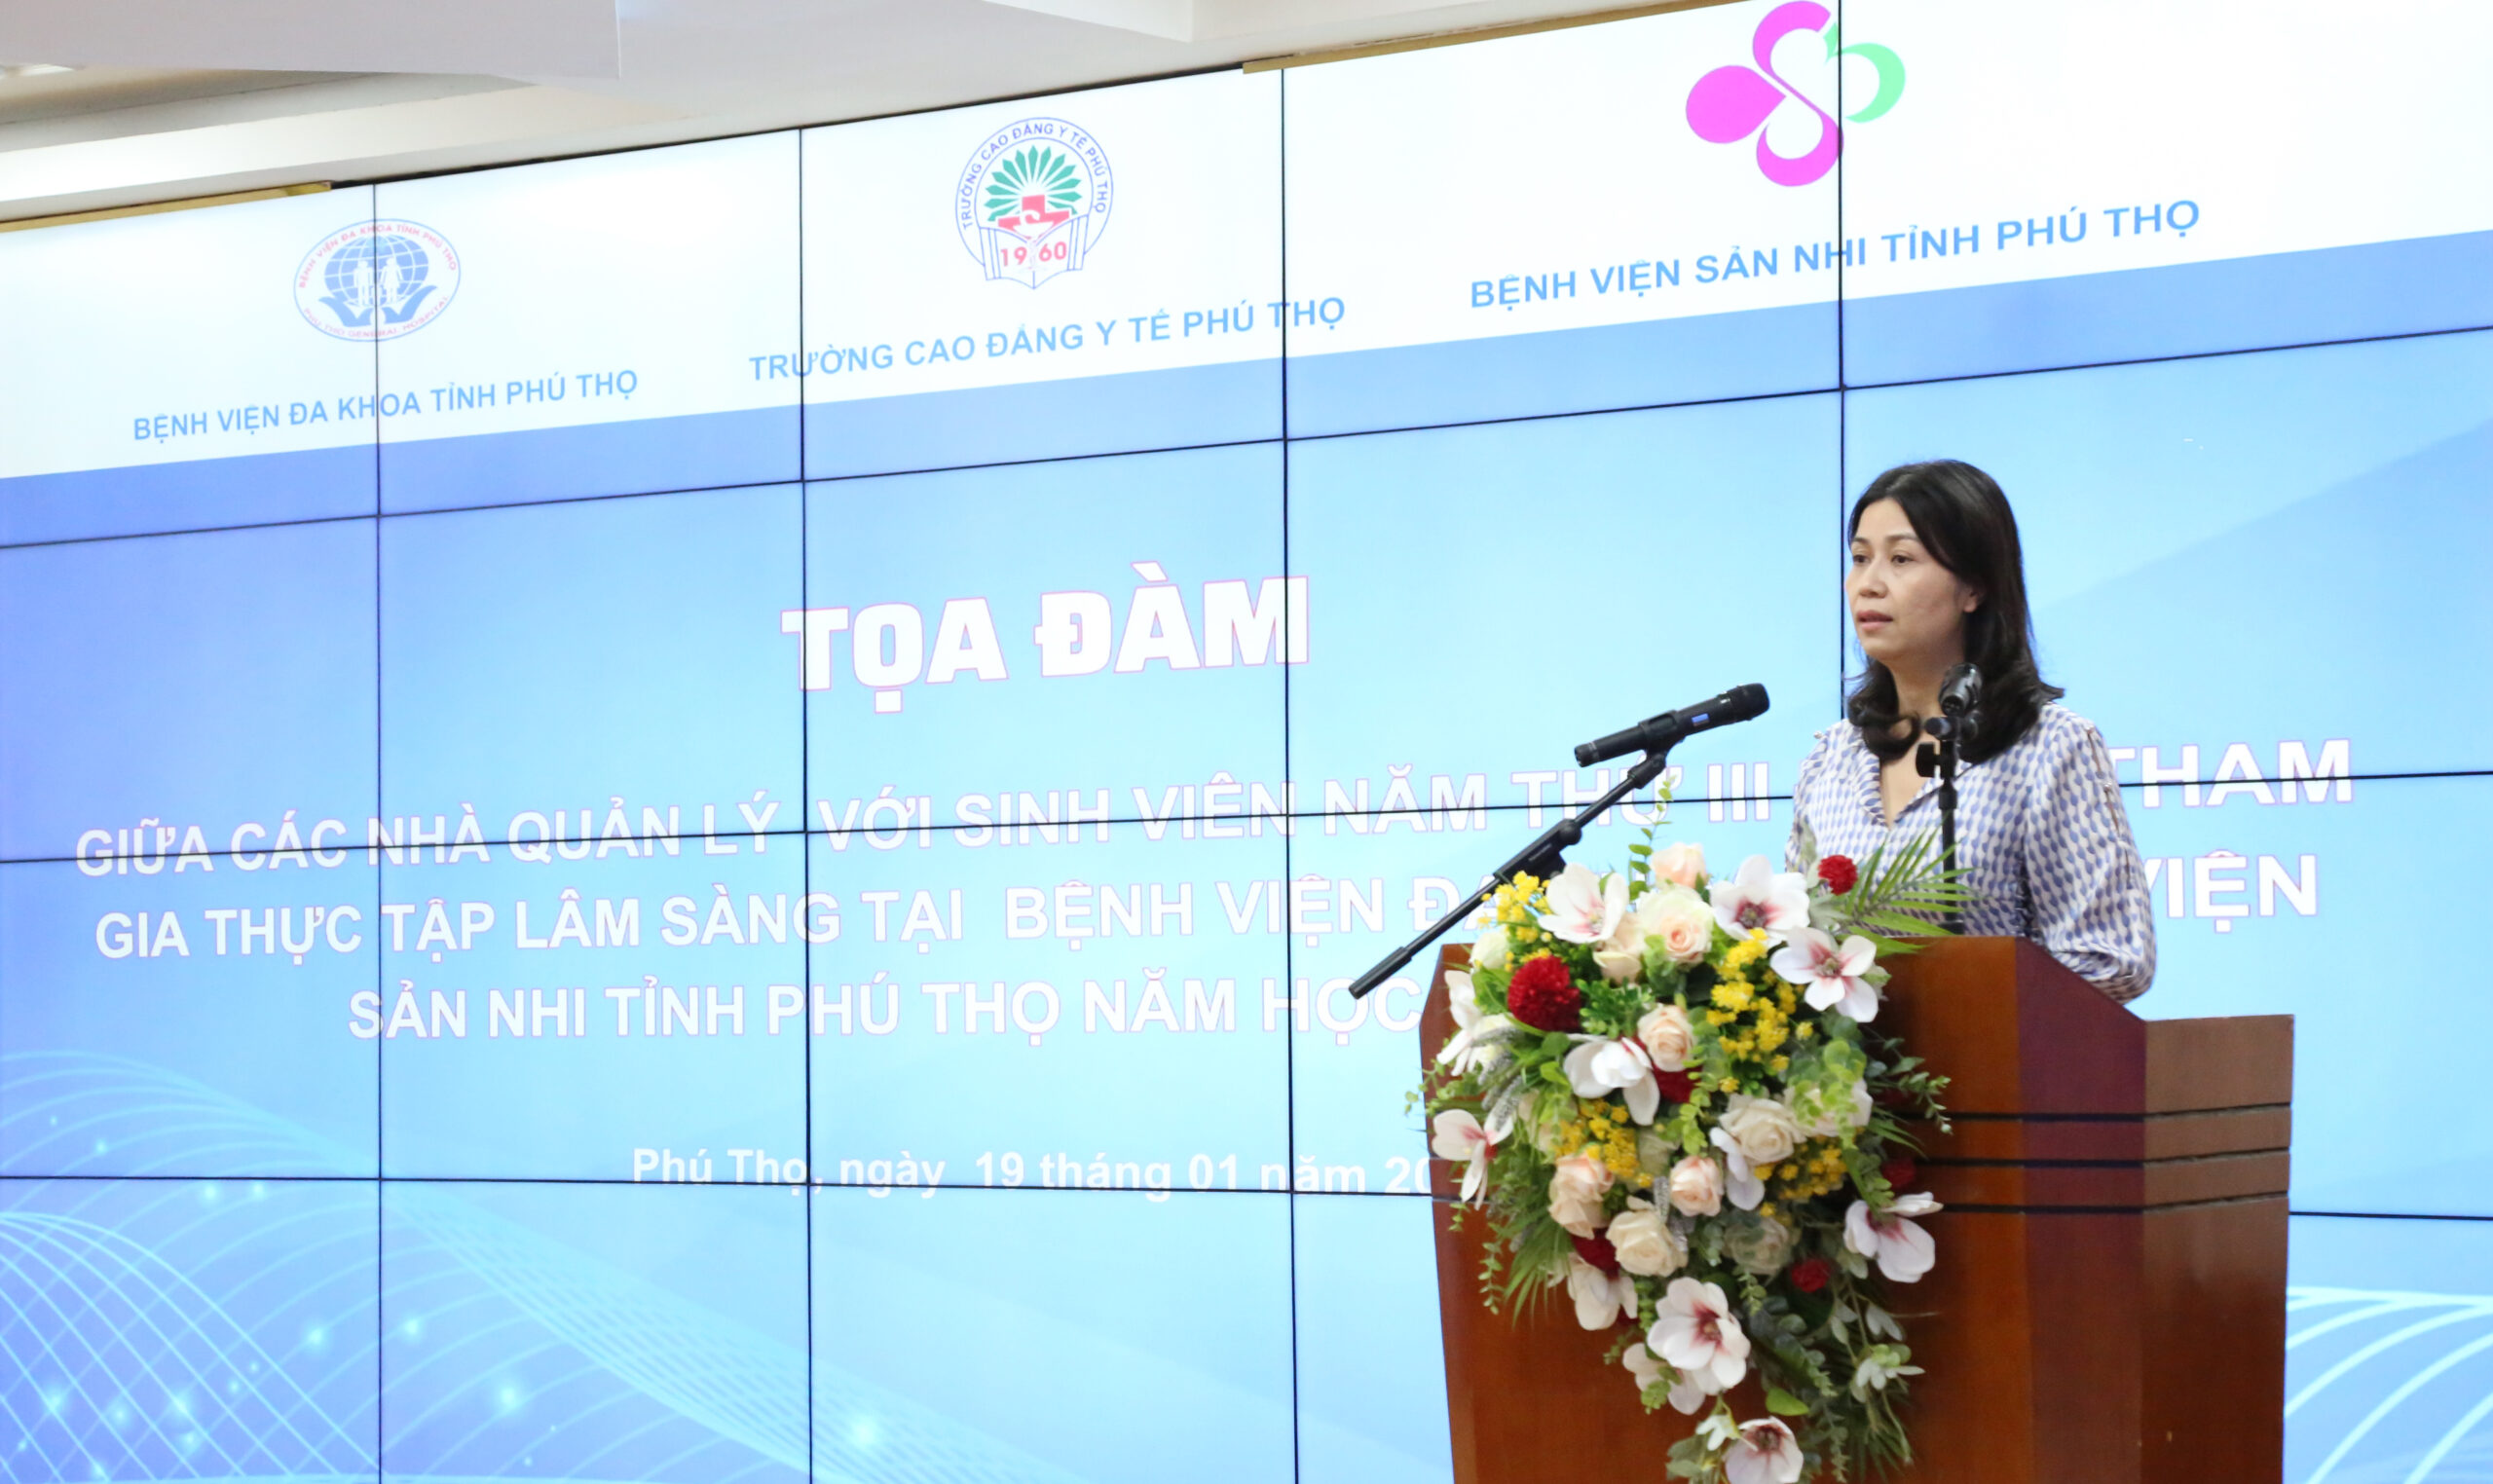 BS CKII Lê Na – Phó Giám đốc BVĐK tỉnh Phú Thọ phát biểu tại chương trình